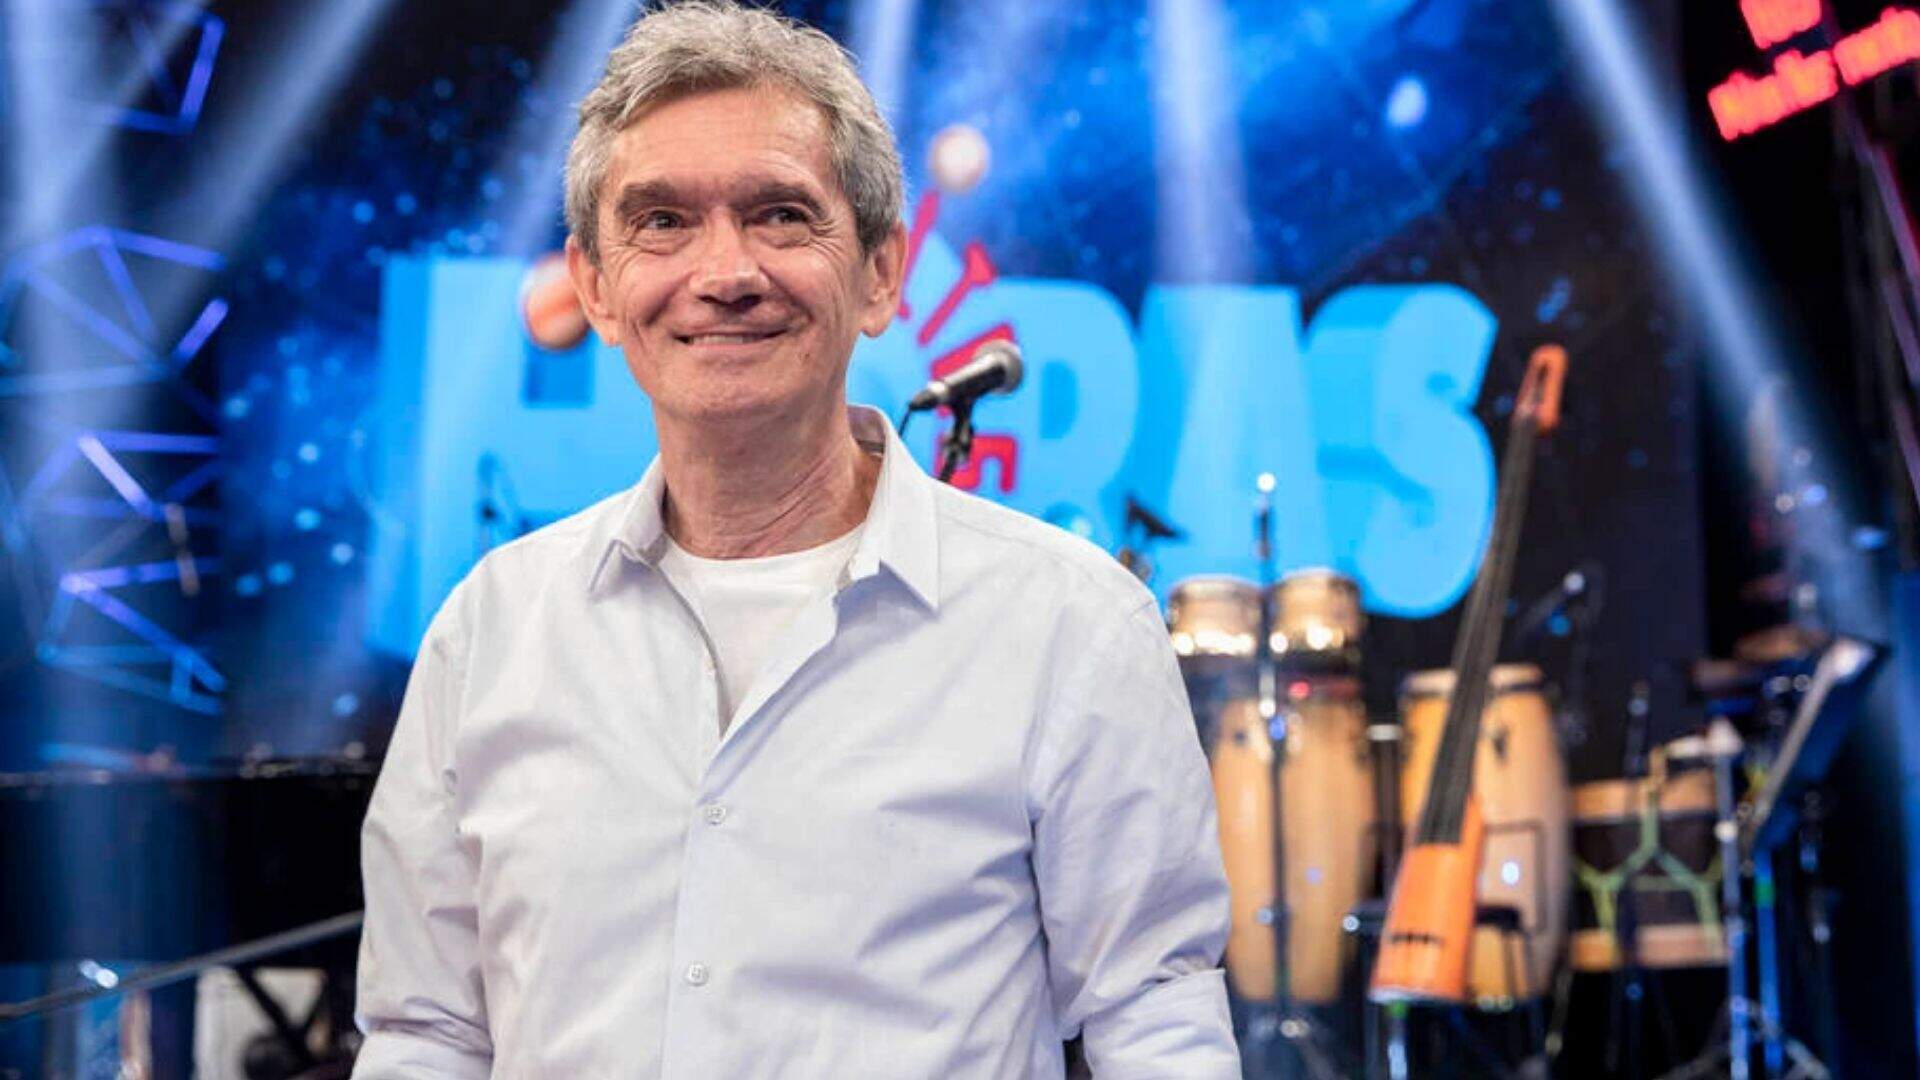 Serginho Groisman é um apresentador brasileiro, ele é diretor e apresentador do Altas Horas desde 2000.